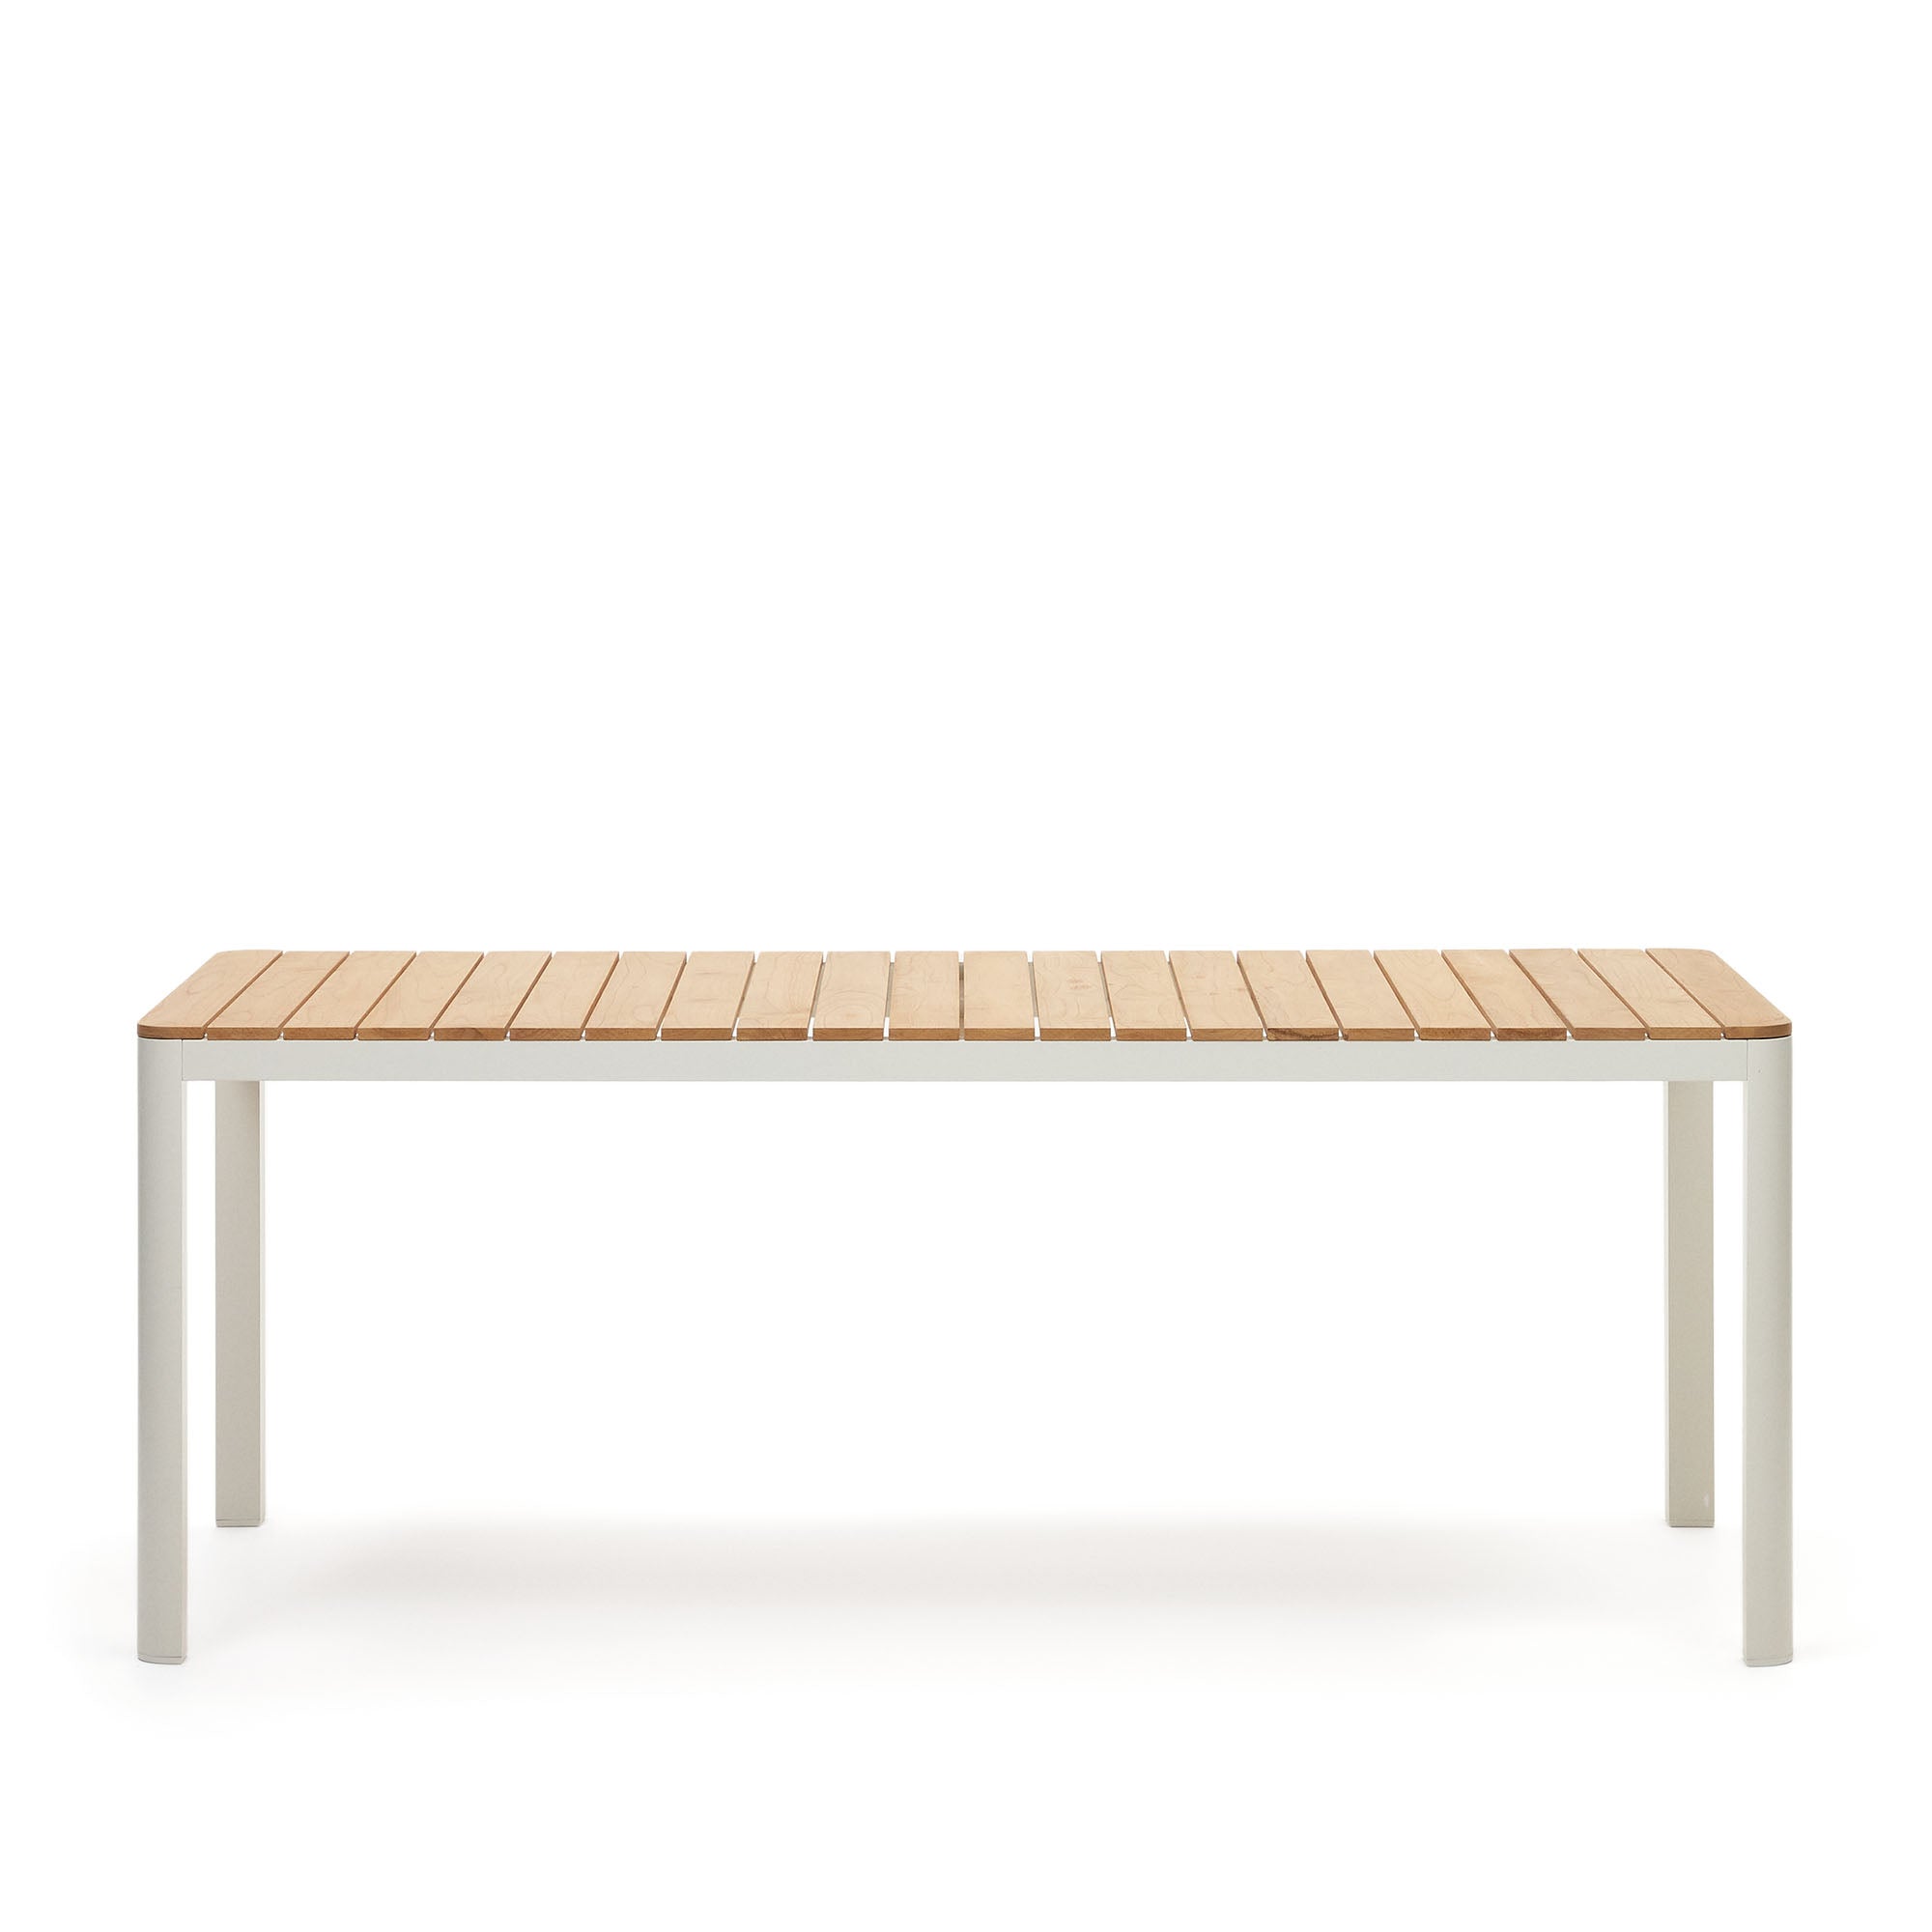 Bona alumínium és tömör teakfa asztal, 100%-ban kültéri használatra alkalmas, fehér kivitelben, 200 x 100 cm